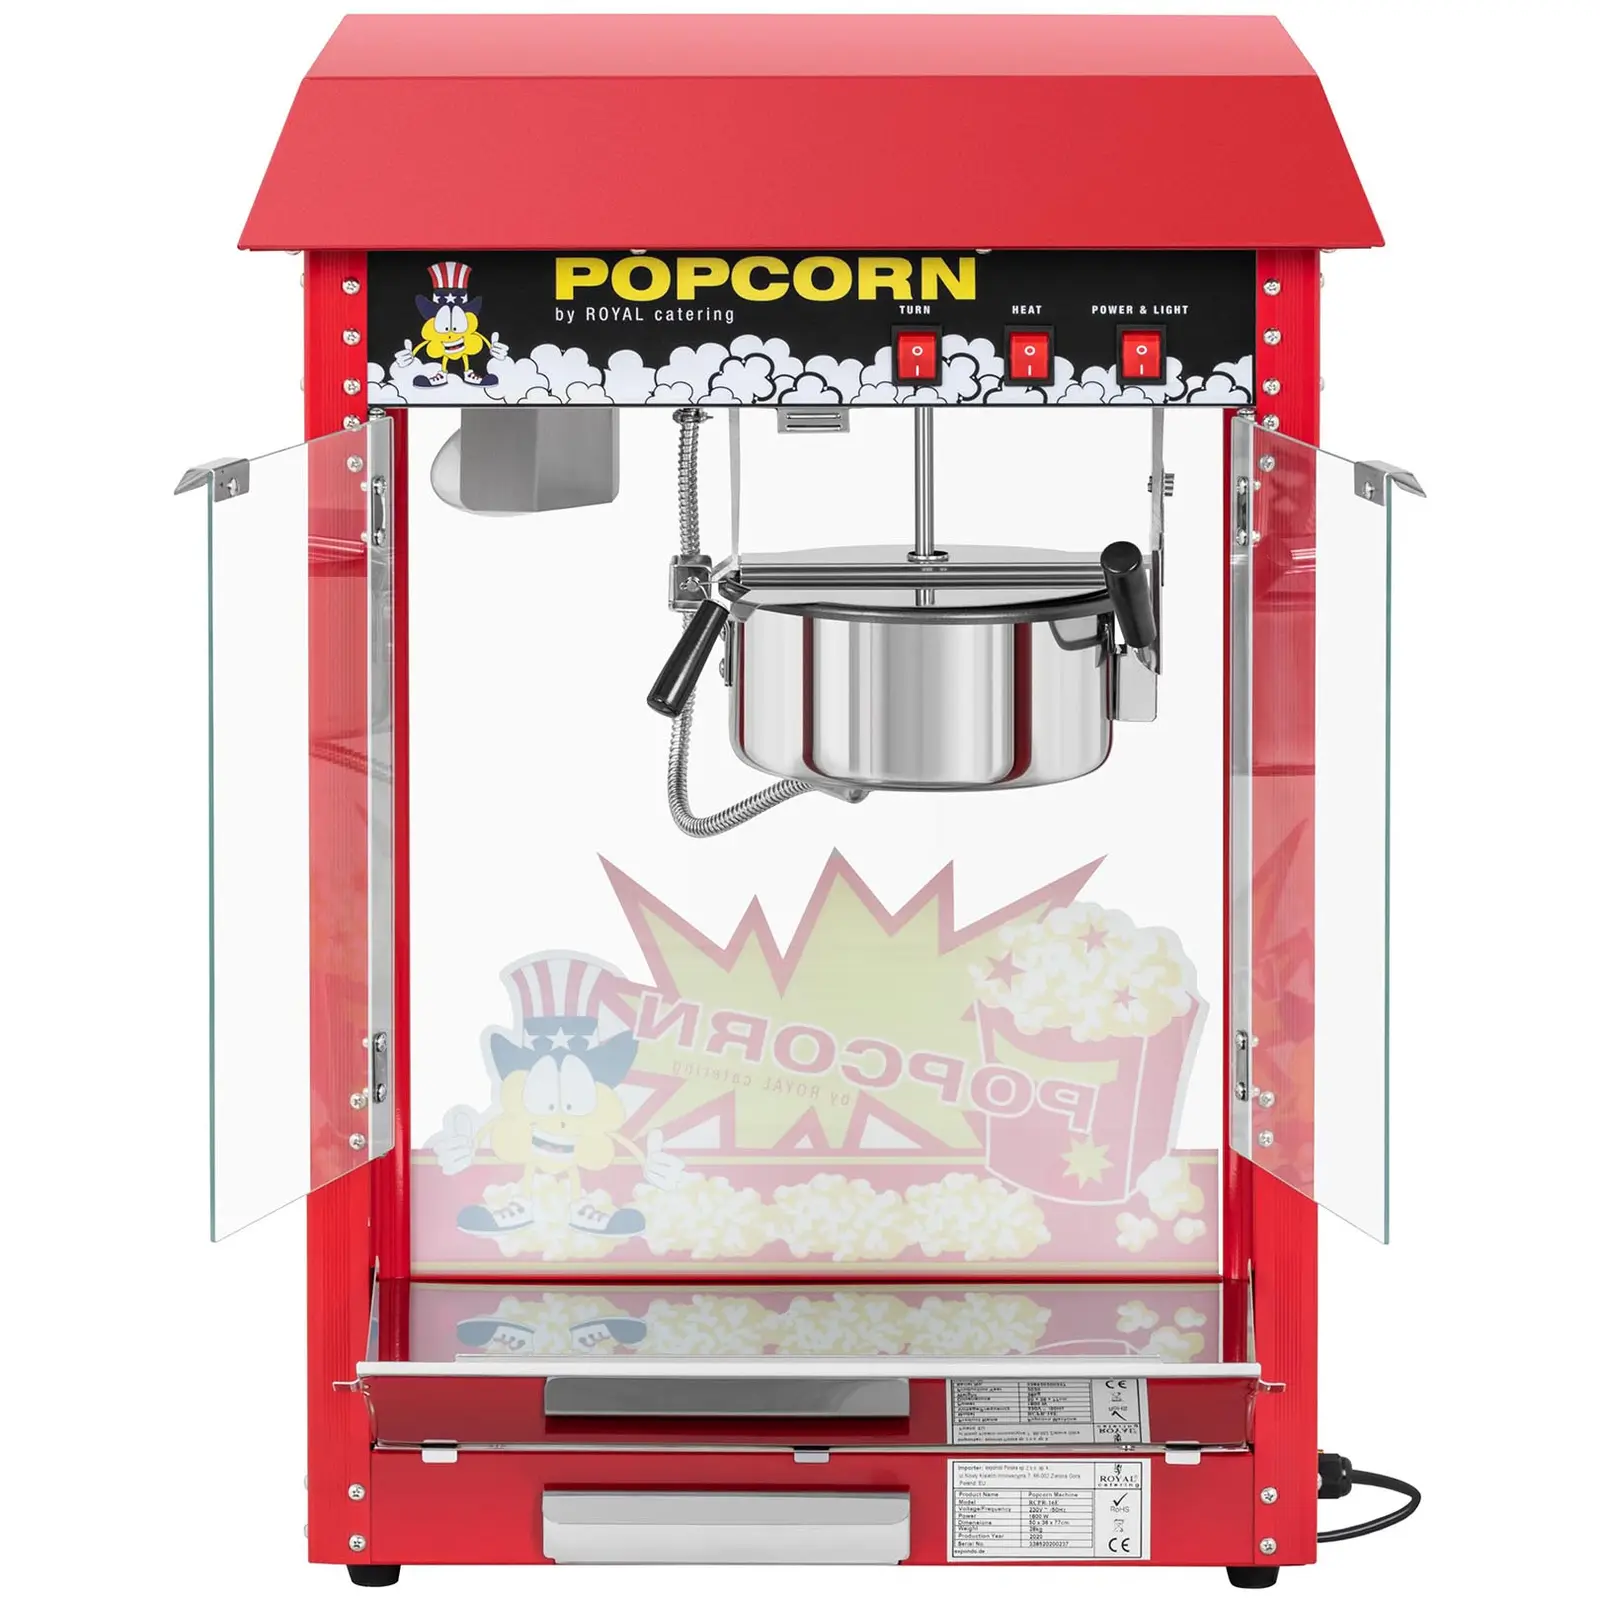 Mała maszyna do popcornu - stal nierdzewna, aluminium, szkło hartowane, powłoka teflonowa 